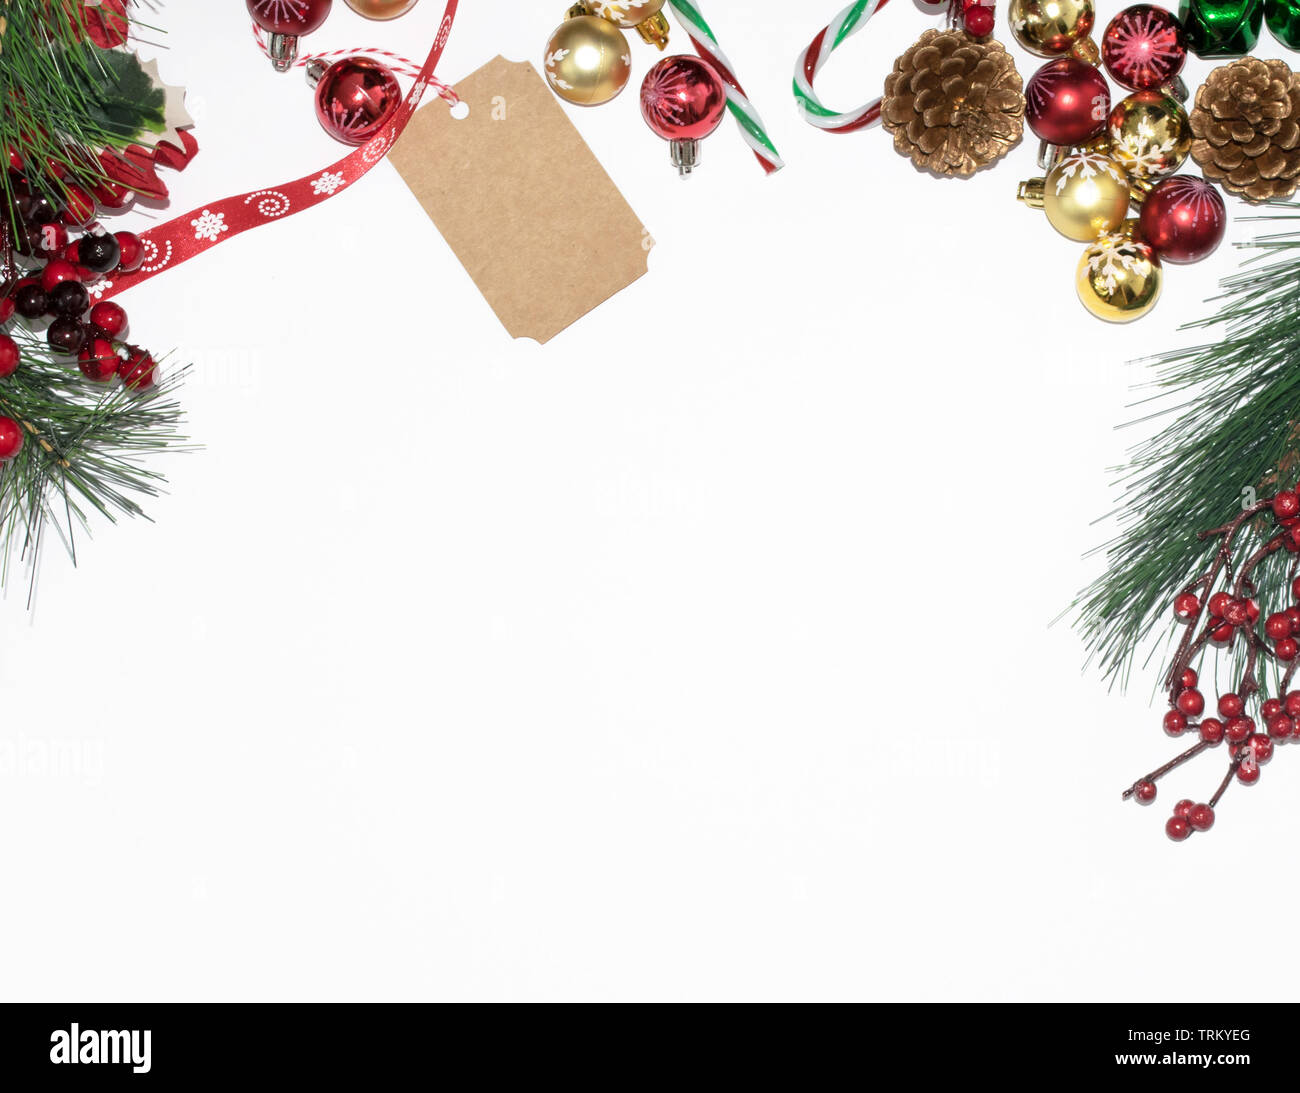 Navidad rojo verde composición en planos estilo laico, vista superior, adornos, Etiquetas de regalo, cinta y ramas de árbol, espacio de copia Foto de stock